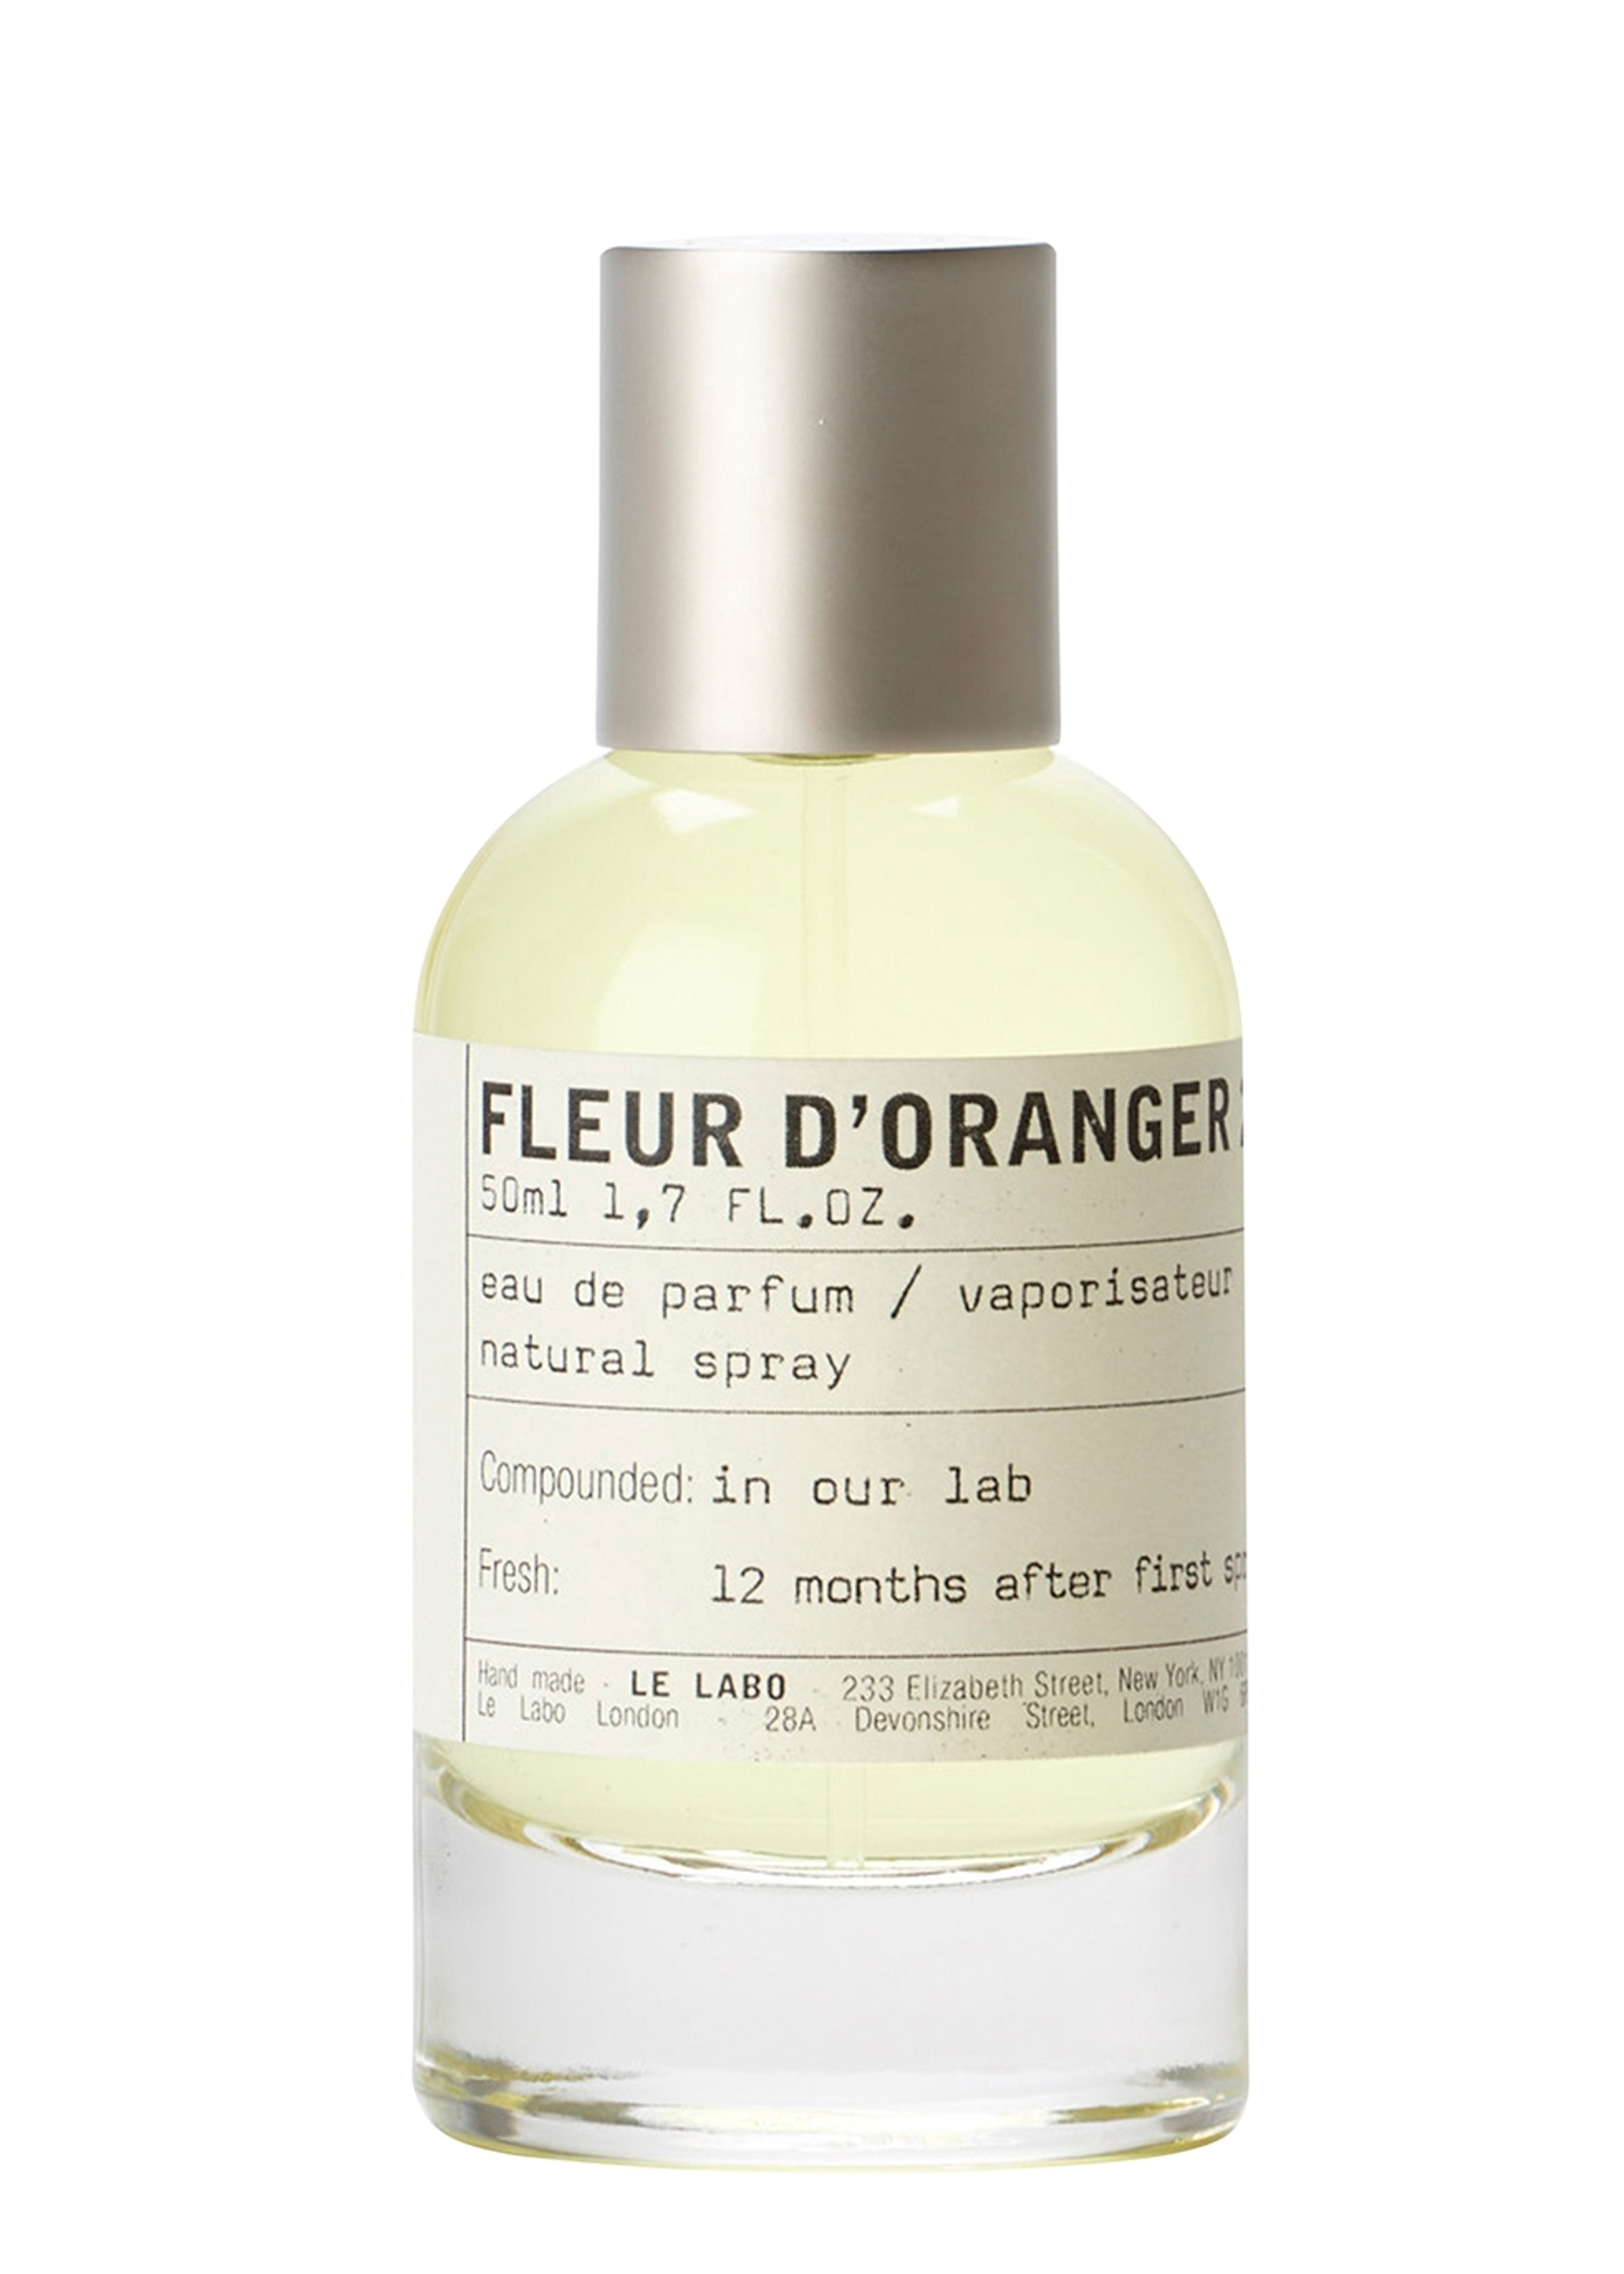 Le Labo, Fleur D’oranger 27 Eau De Parfum